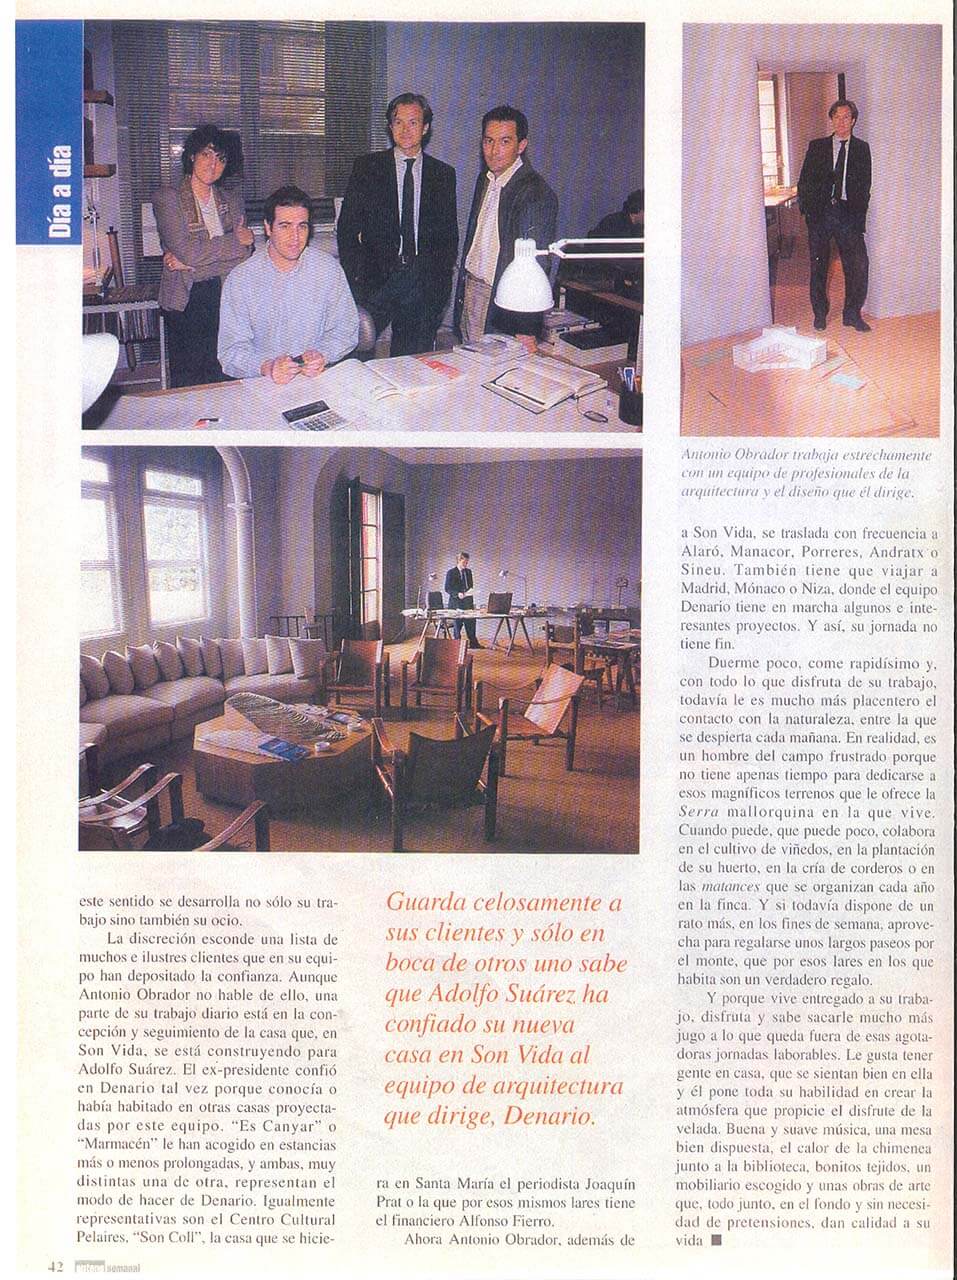 revista brisas 1996 antonio obrador 03